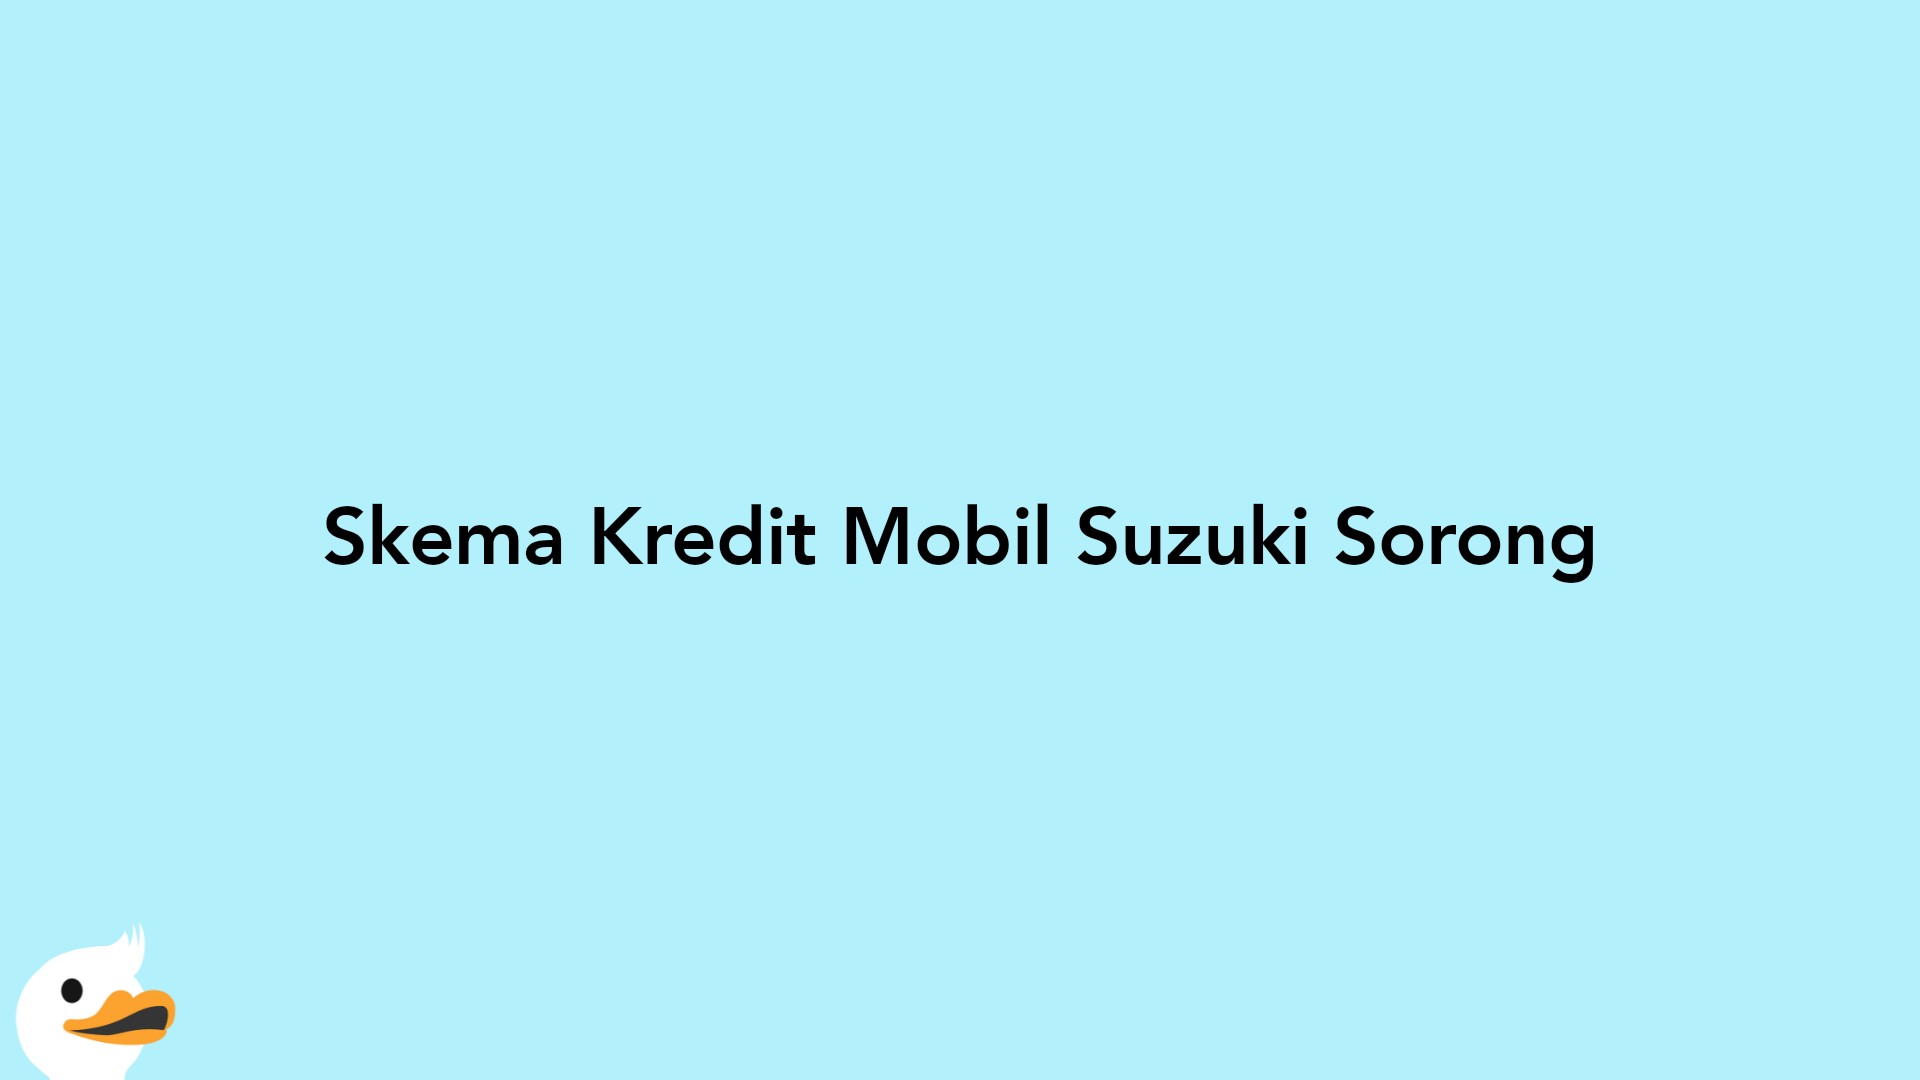 Skema Kredit Mobil Suzuki Sorong